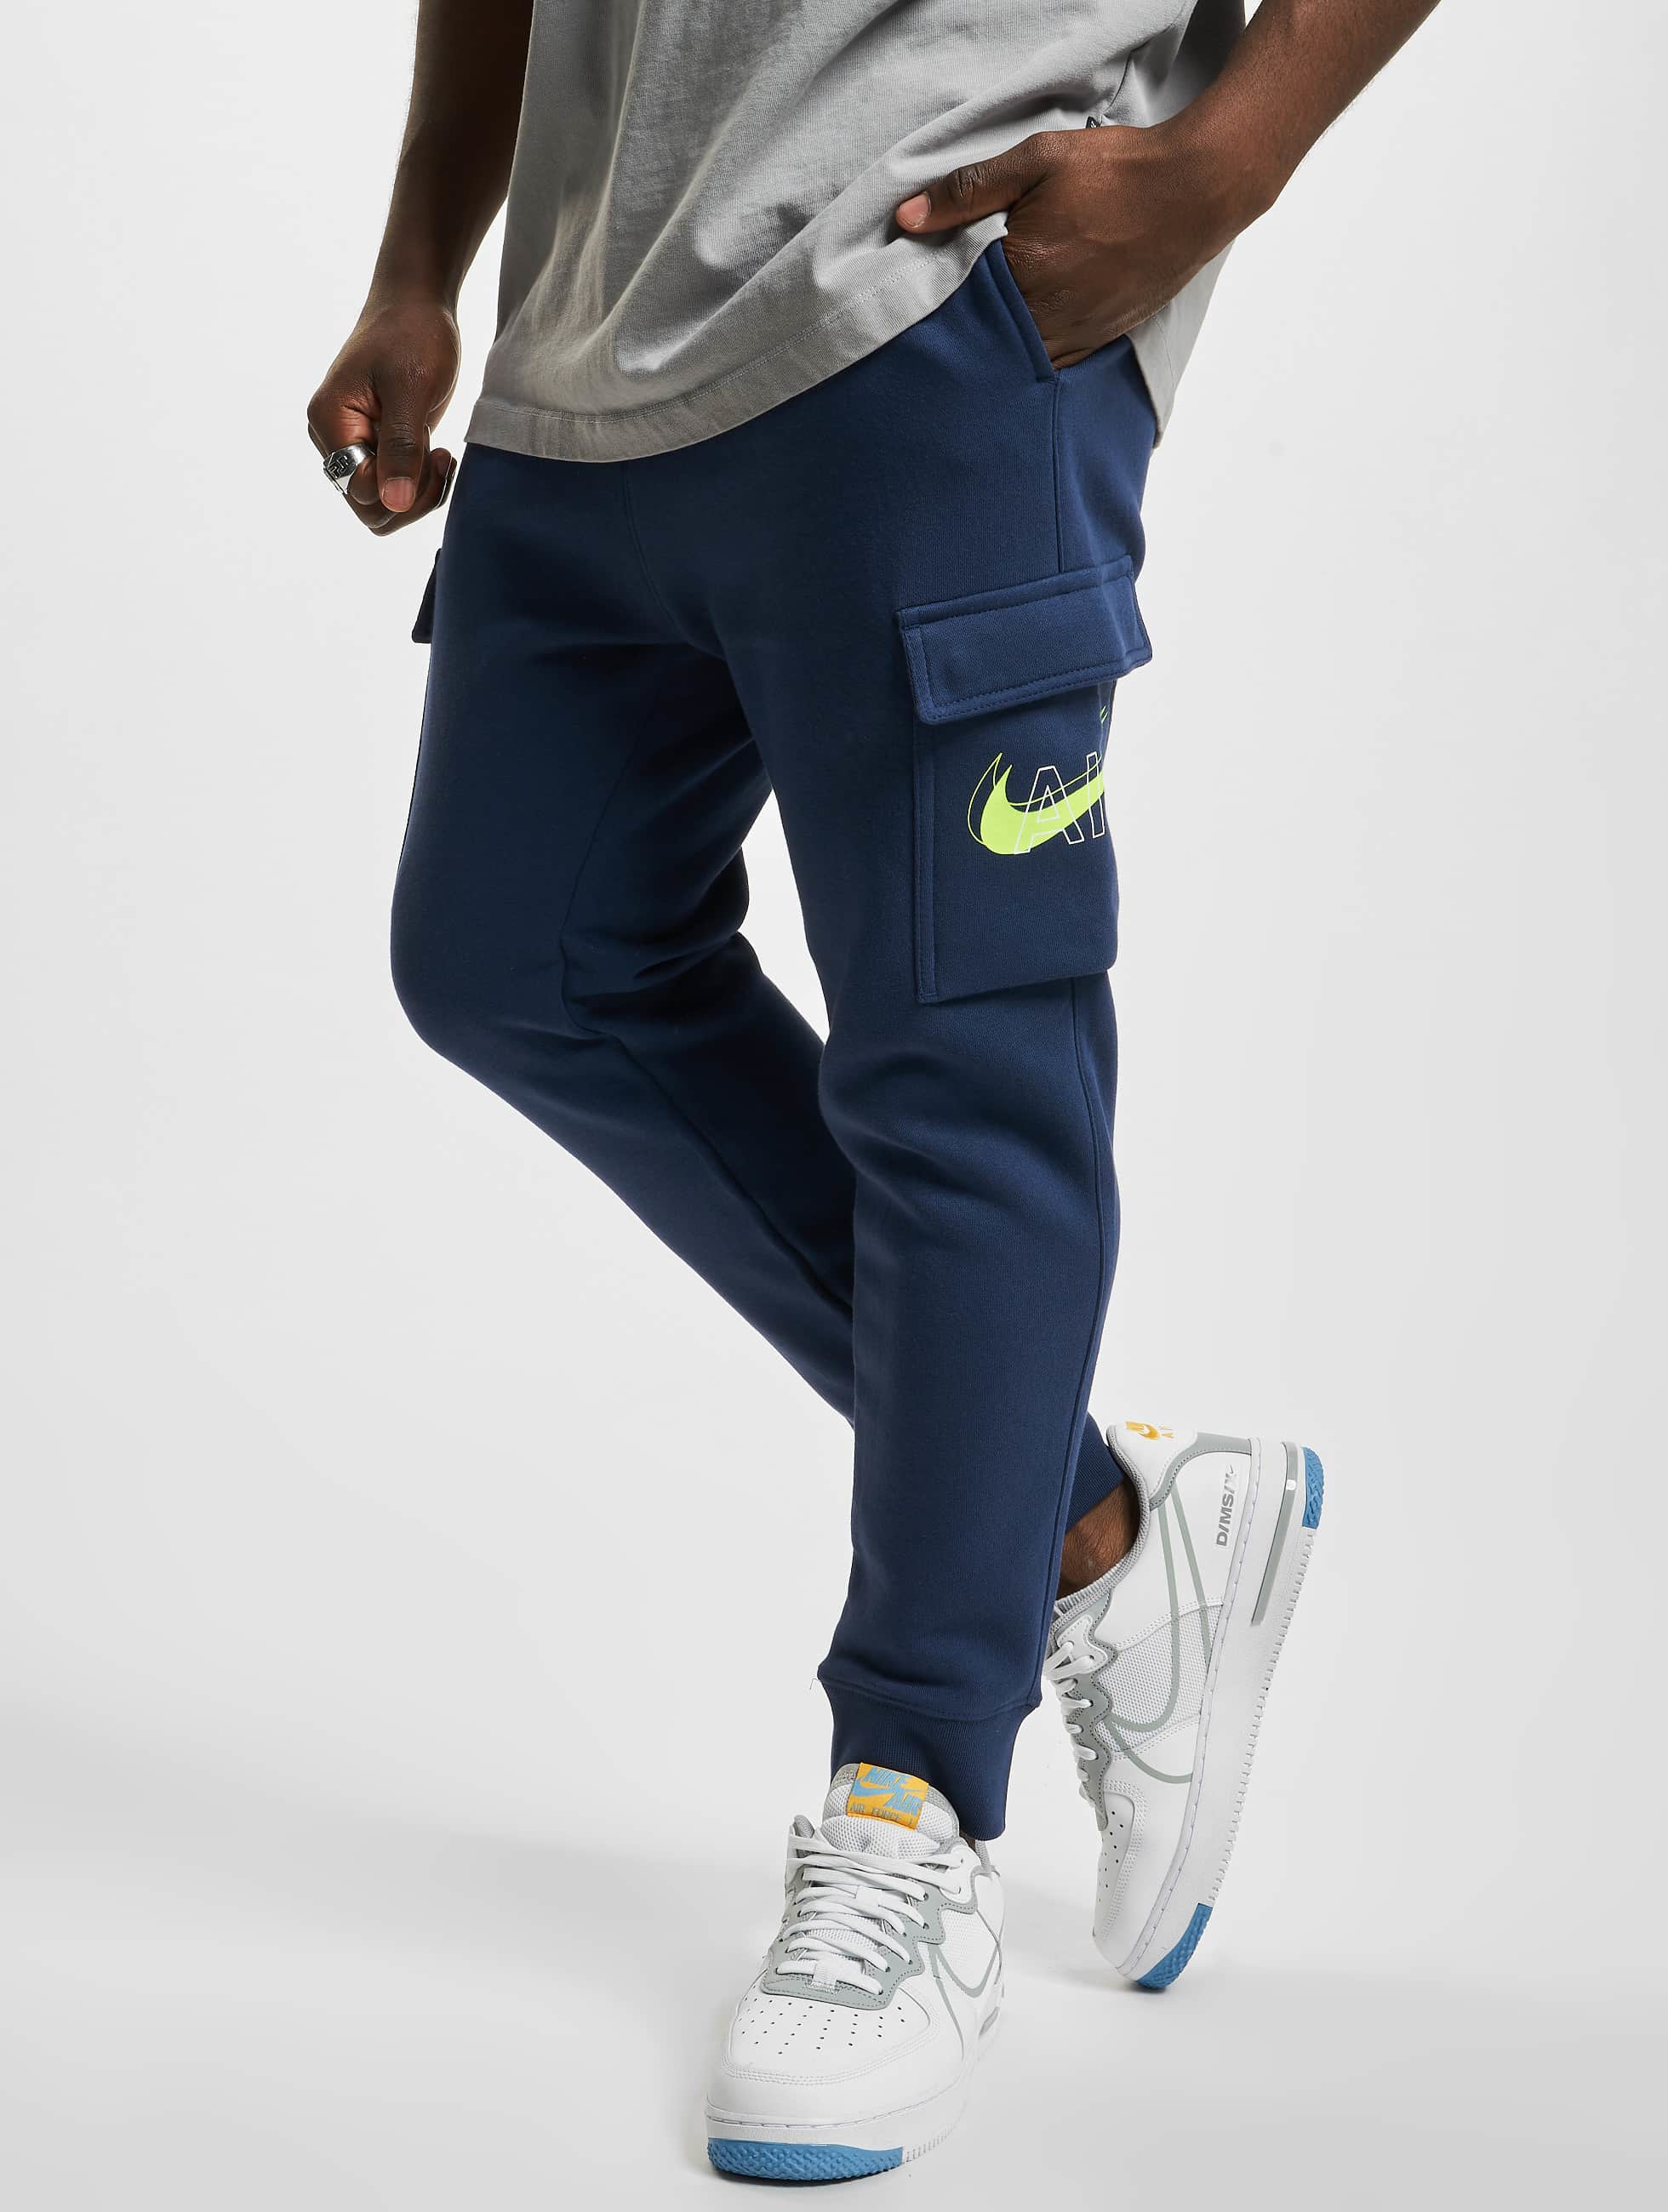 Melódico Deliberar Palabra Nike Pantalón / Pantalón deportivo Cargo Air Prnt Pack en azul 925103